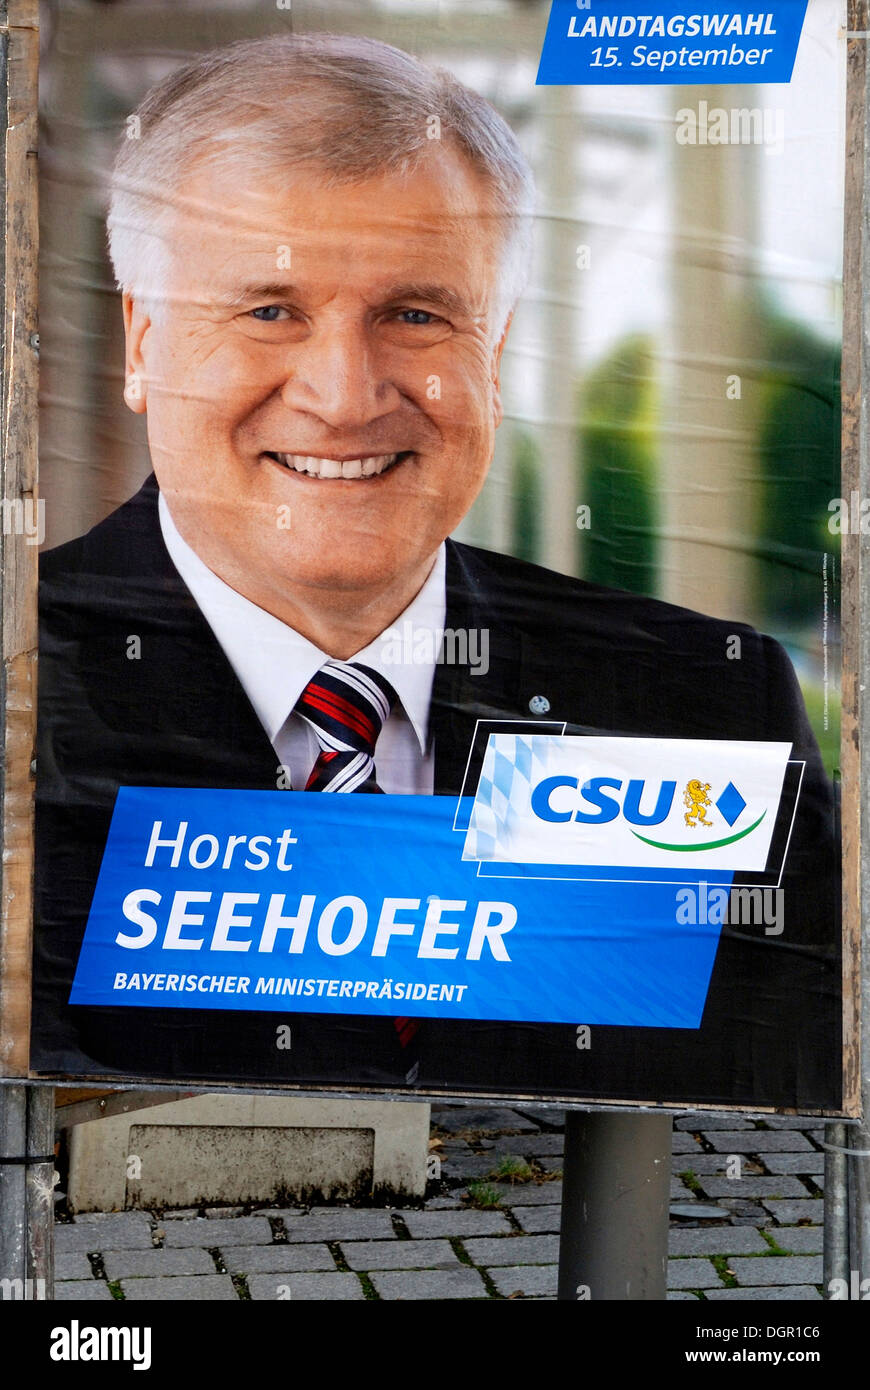 Poster pubblicitari CSU per il primo ministro bavarese Horst Seehofer per le elezioni statali in Baviera su 15.09.2013. Foto Stock